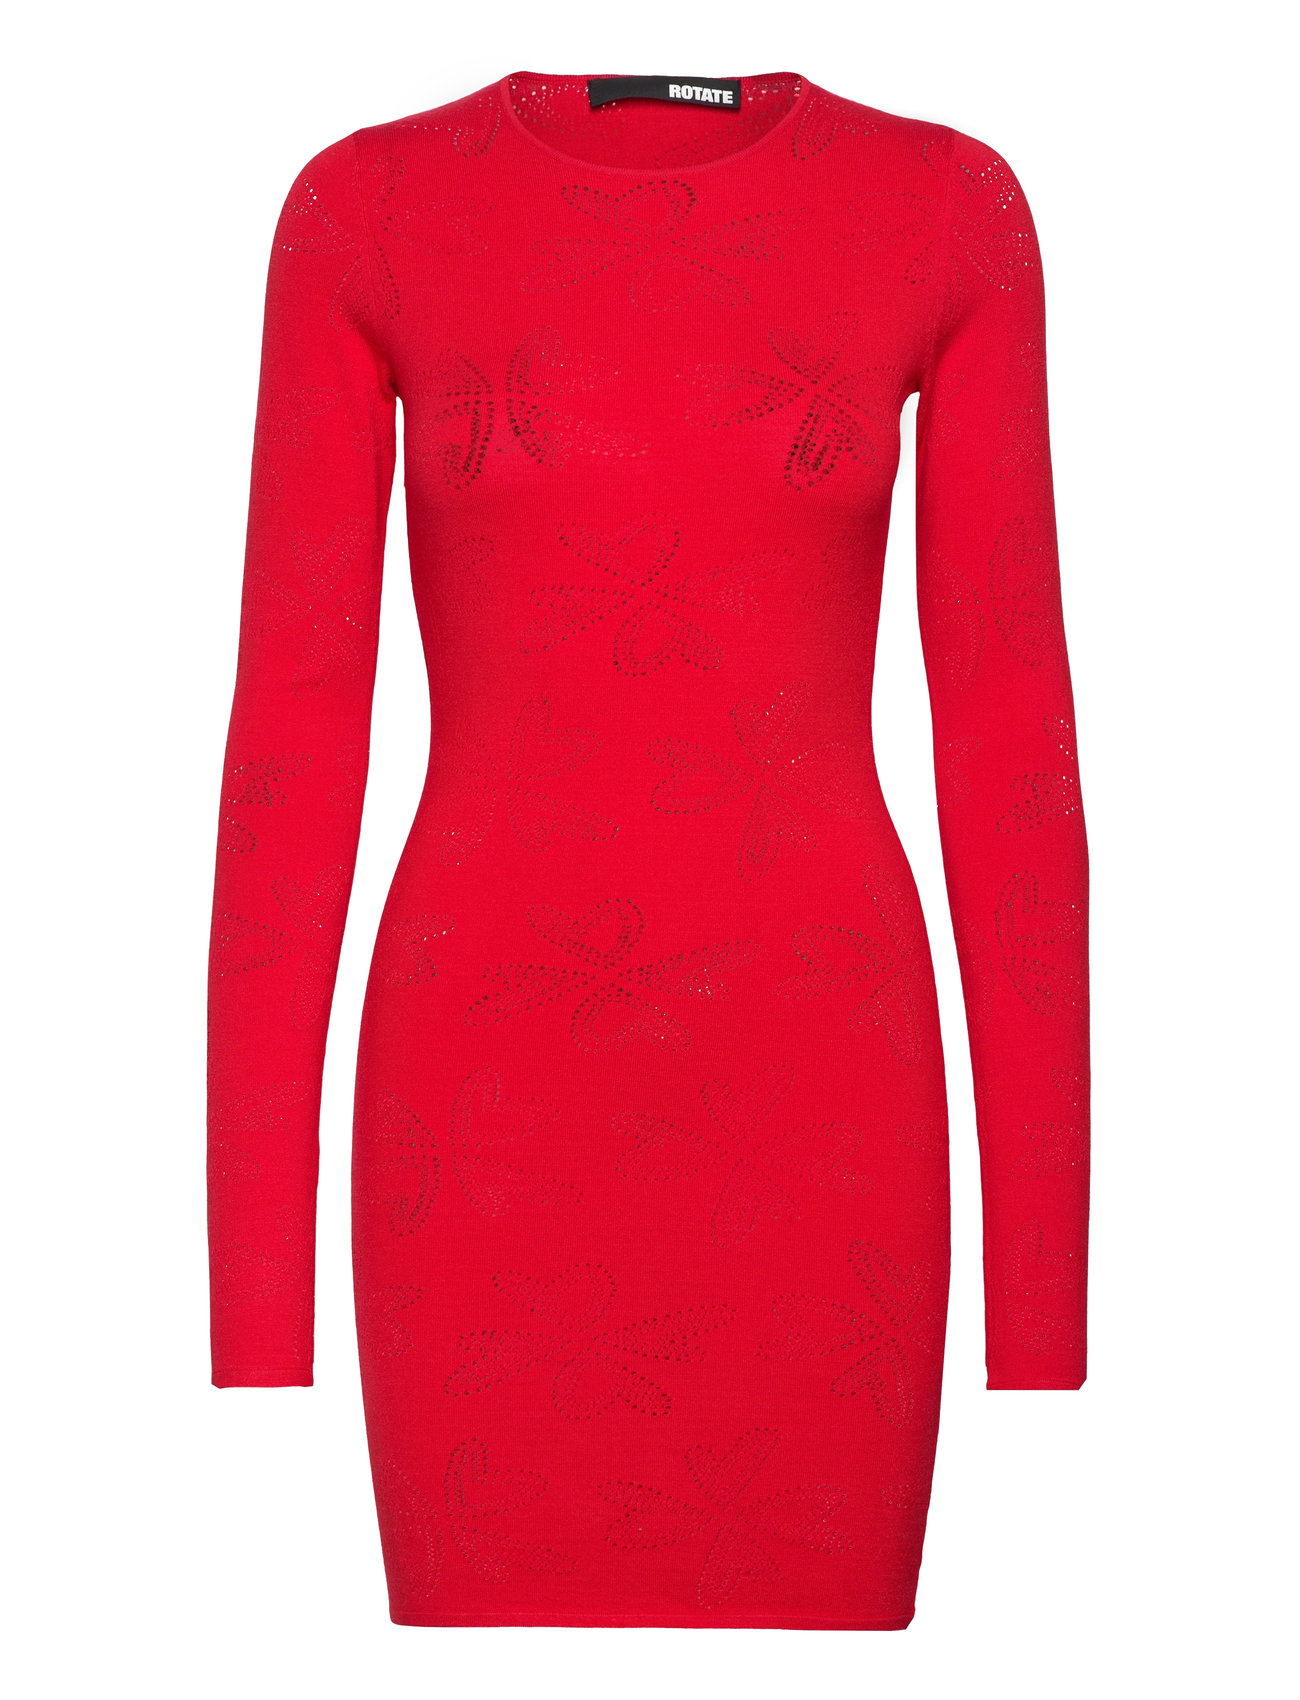 Pointelle Knit Mini Dress Kort Kjole Red ROTATE Birger Christensen